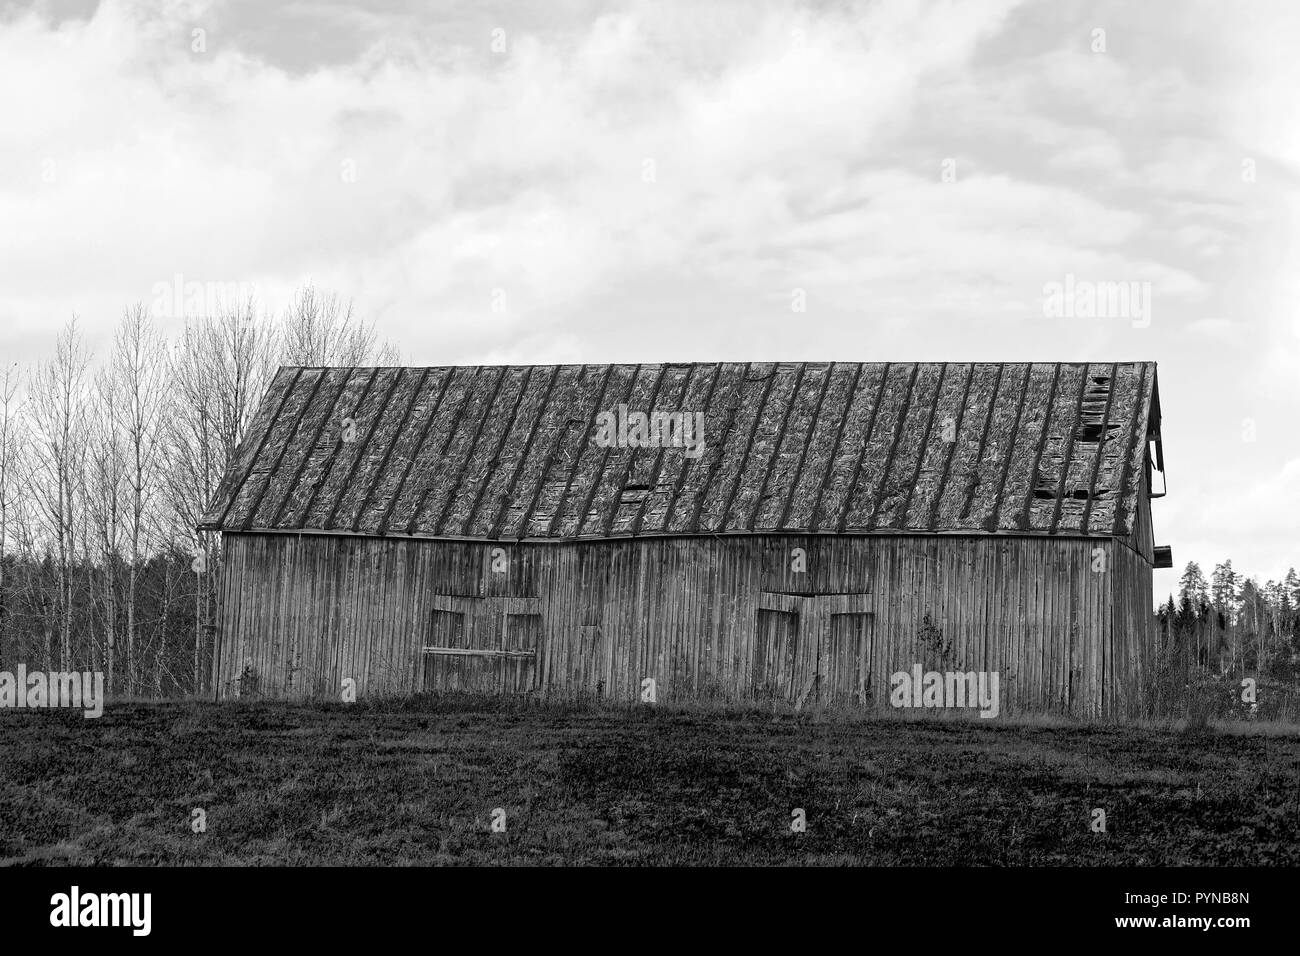 Il vecchio fienile con tetto shigle in campo nel paese. Immagine in bianco e nero. Foto Stock